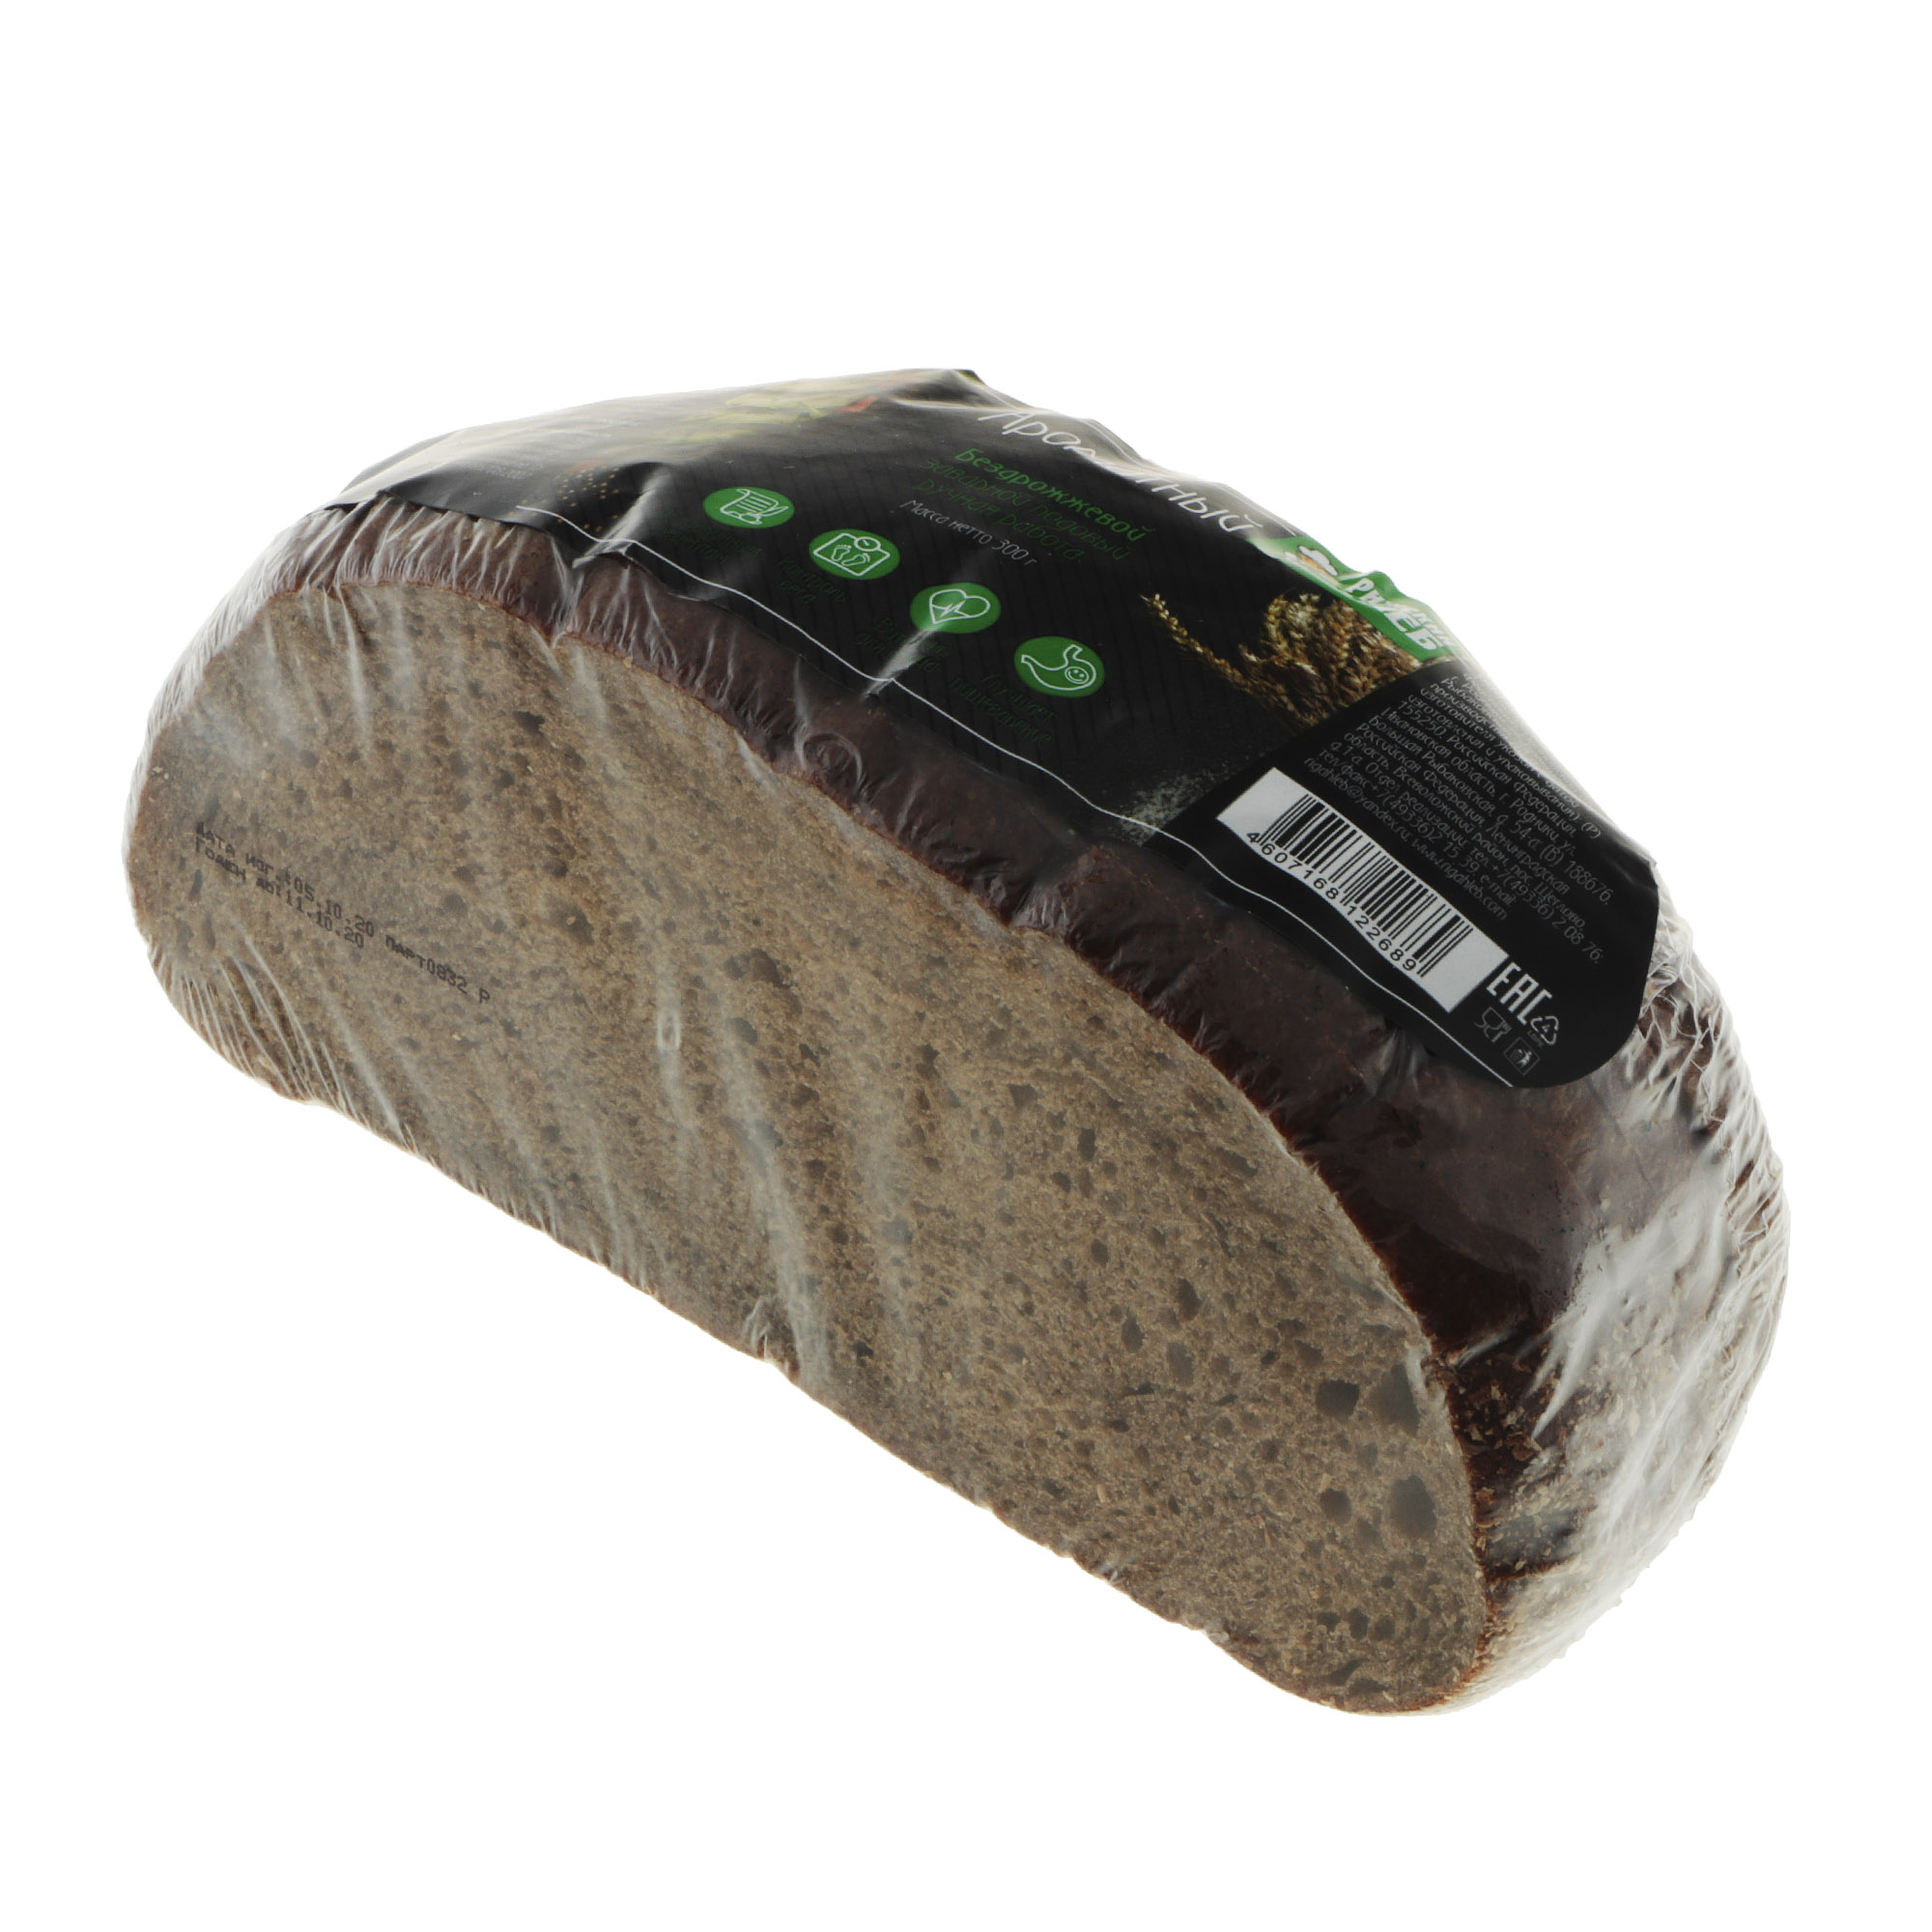 Хлеб Рижский хлеб ароматный 300 г хлеб рижский хлеб ароматный с изюмом 300 г